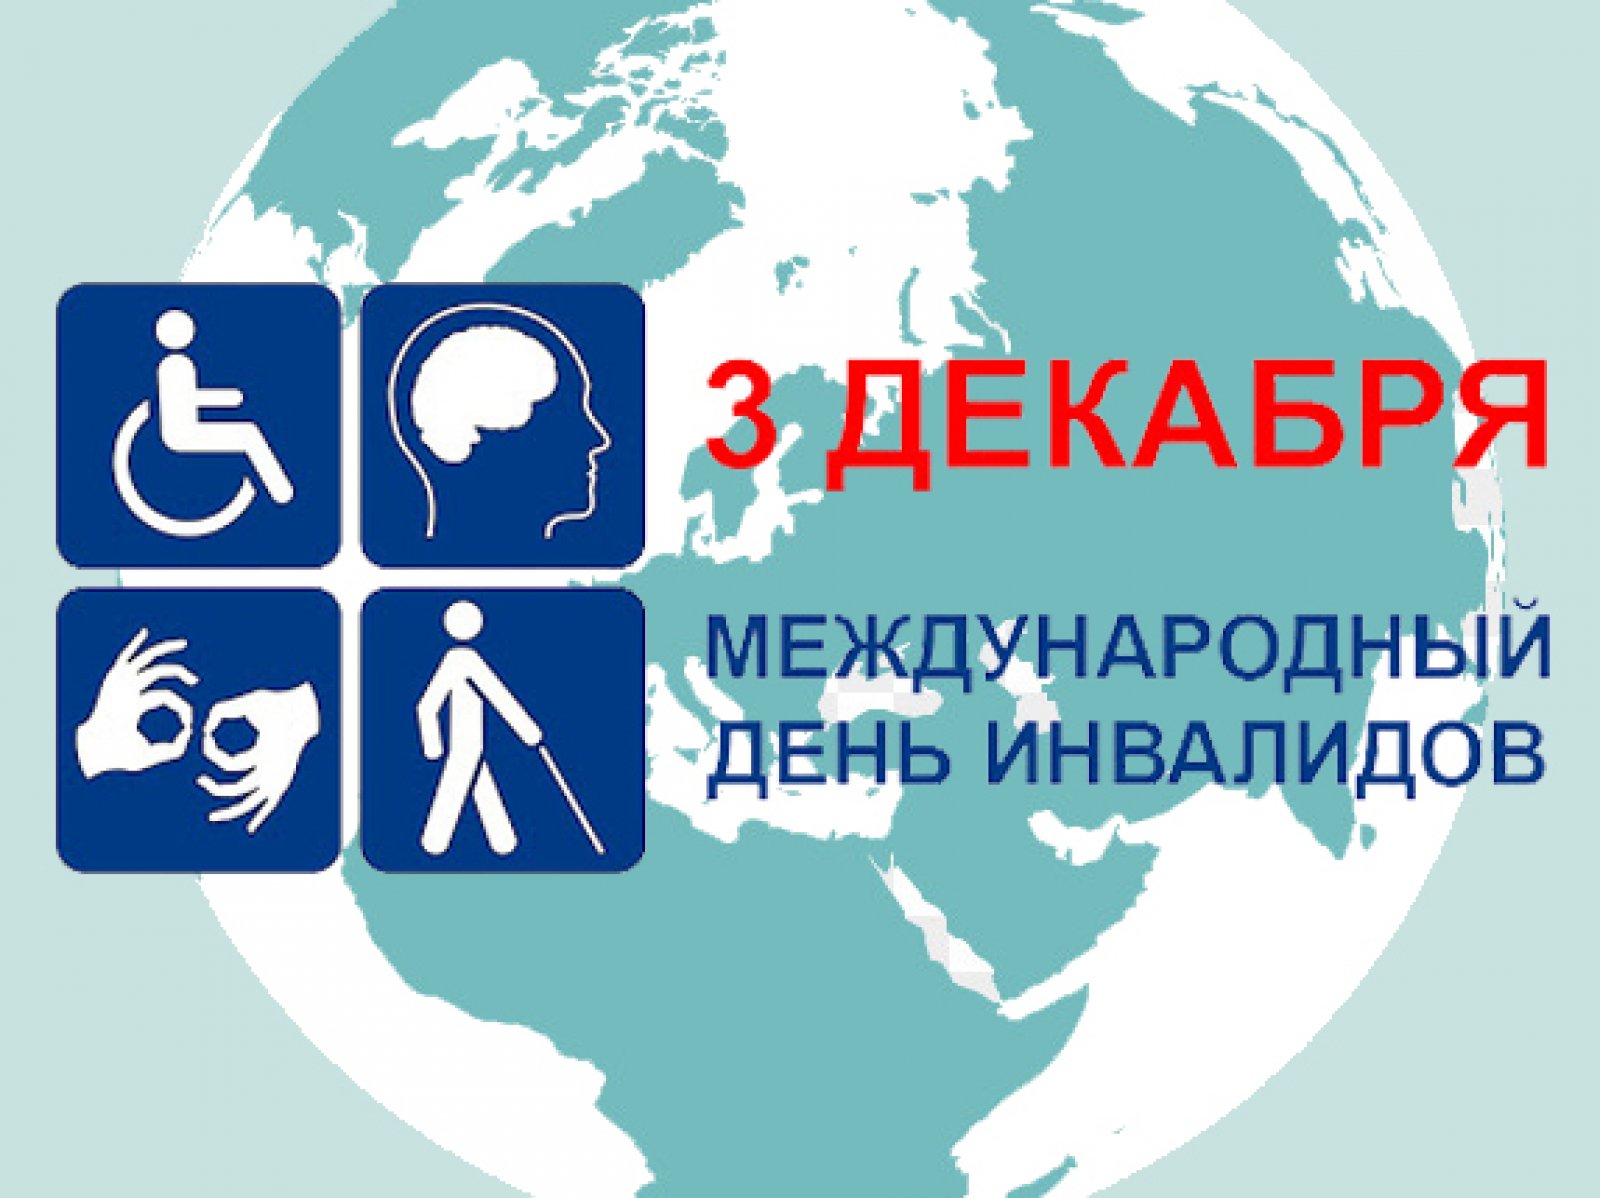 Международный день инвалидов в режиме онлайн